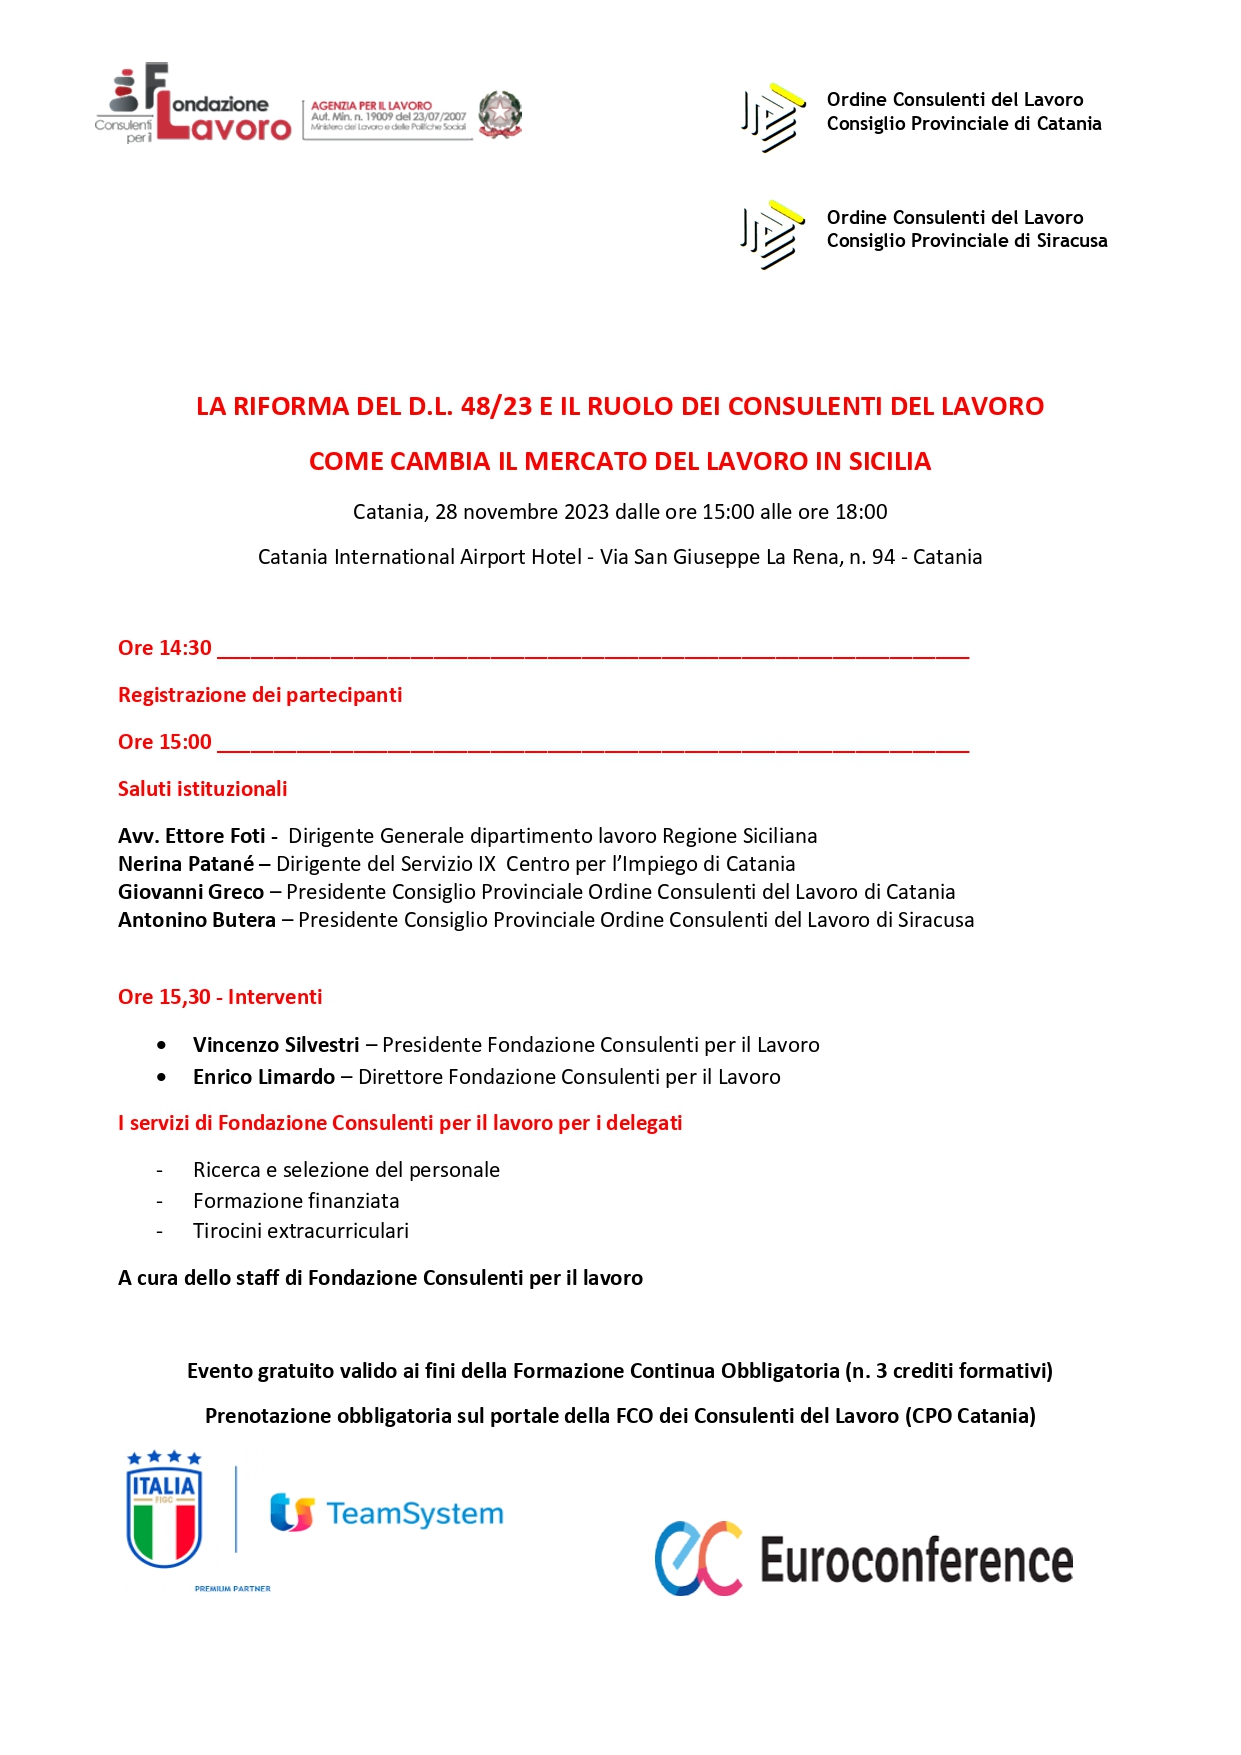 Convegno: "La Riforma del D.L. 48/23 e il ruolo dei Consulenti del Lavoro. Come cambia il Mercato del Lavoro in Sicilia" Catania 28 novembre 2023